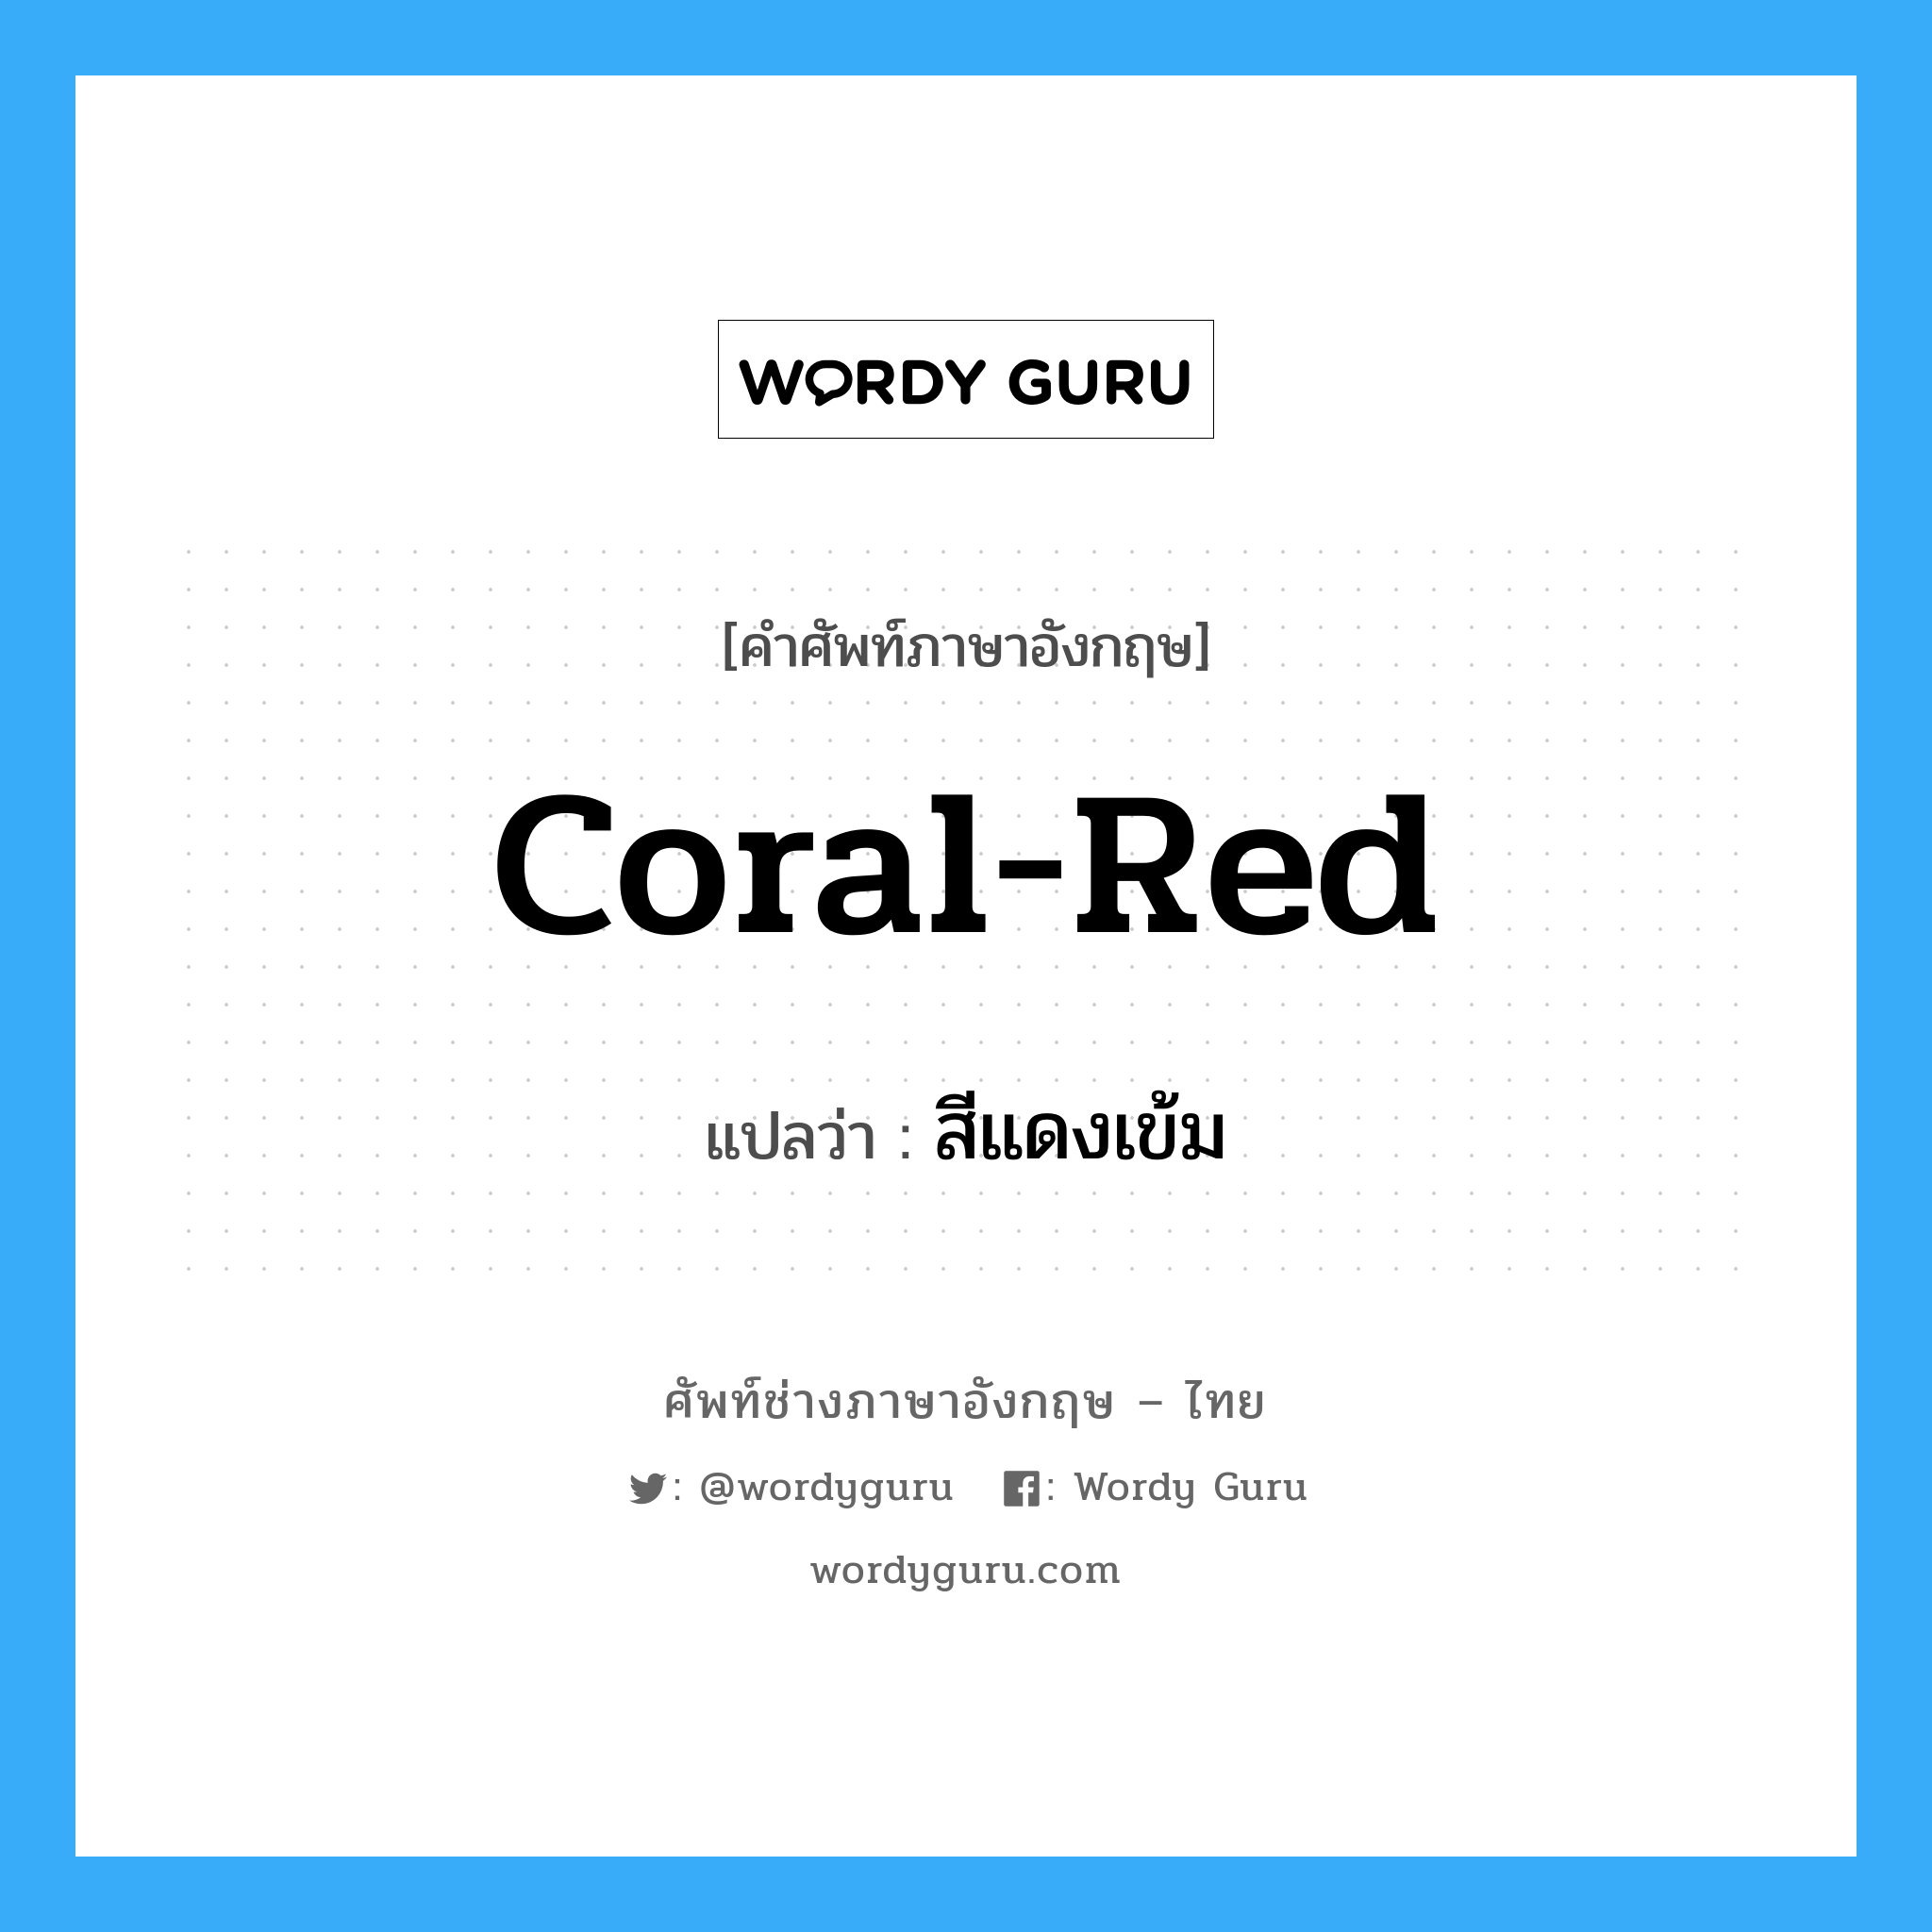 coral-red แปลว่า?, คำศัพท์ช่างภาษาอังกฤษ - ไทย coral-red คำศัพท์ภาษาอังกฤษ coral-red แปลว่า สีแดงเข้ม